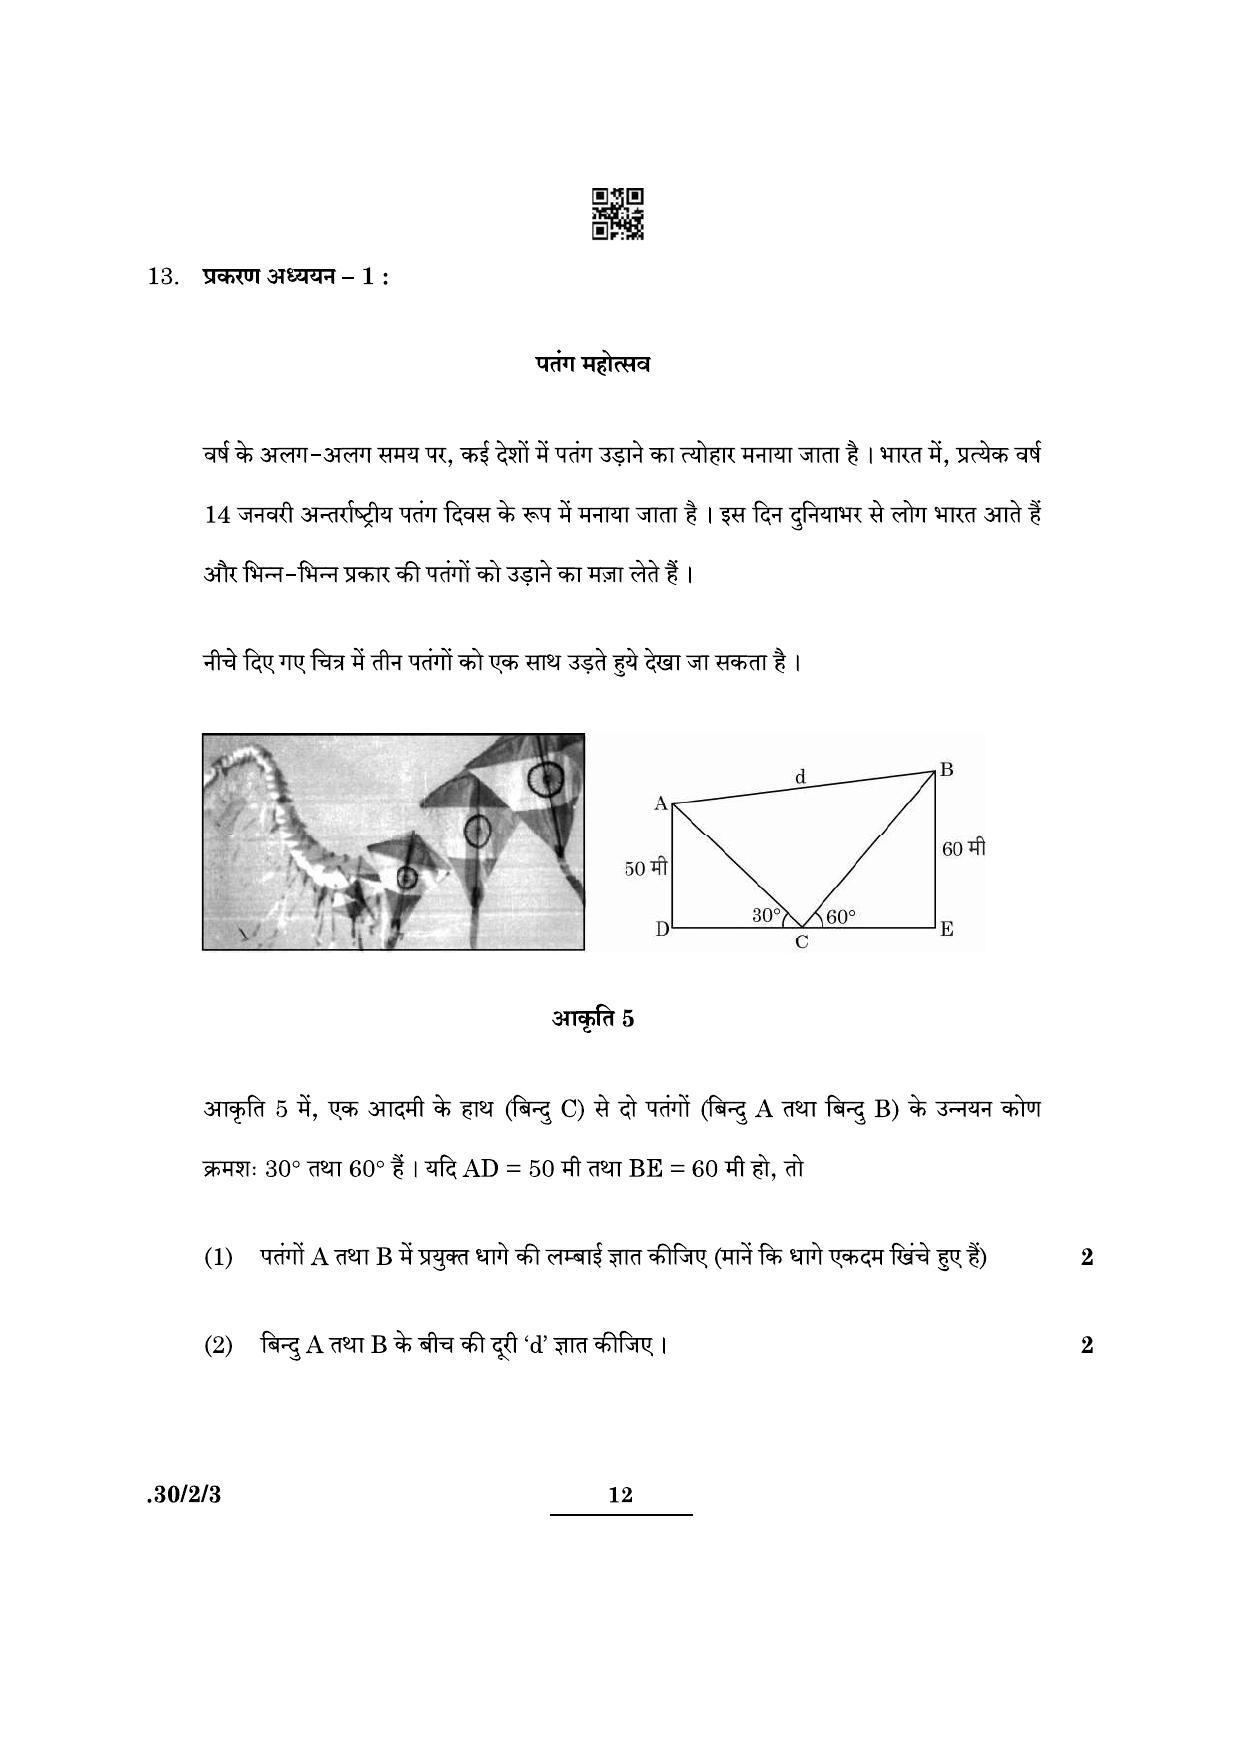 CBSE Class 10 Maths (30/2/3 - SET III) 2022 Question Paper - Page 12